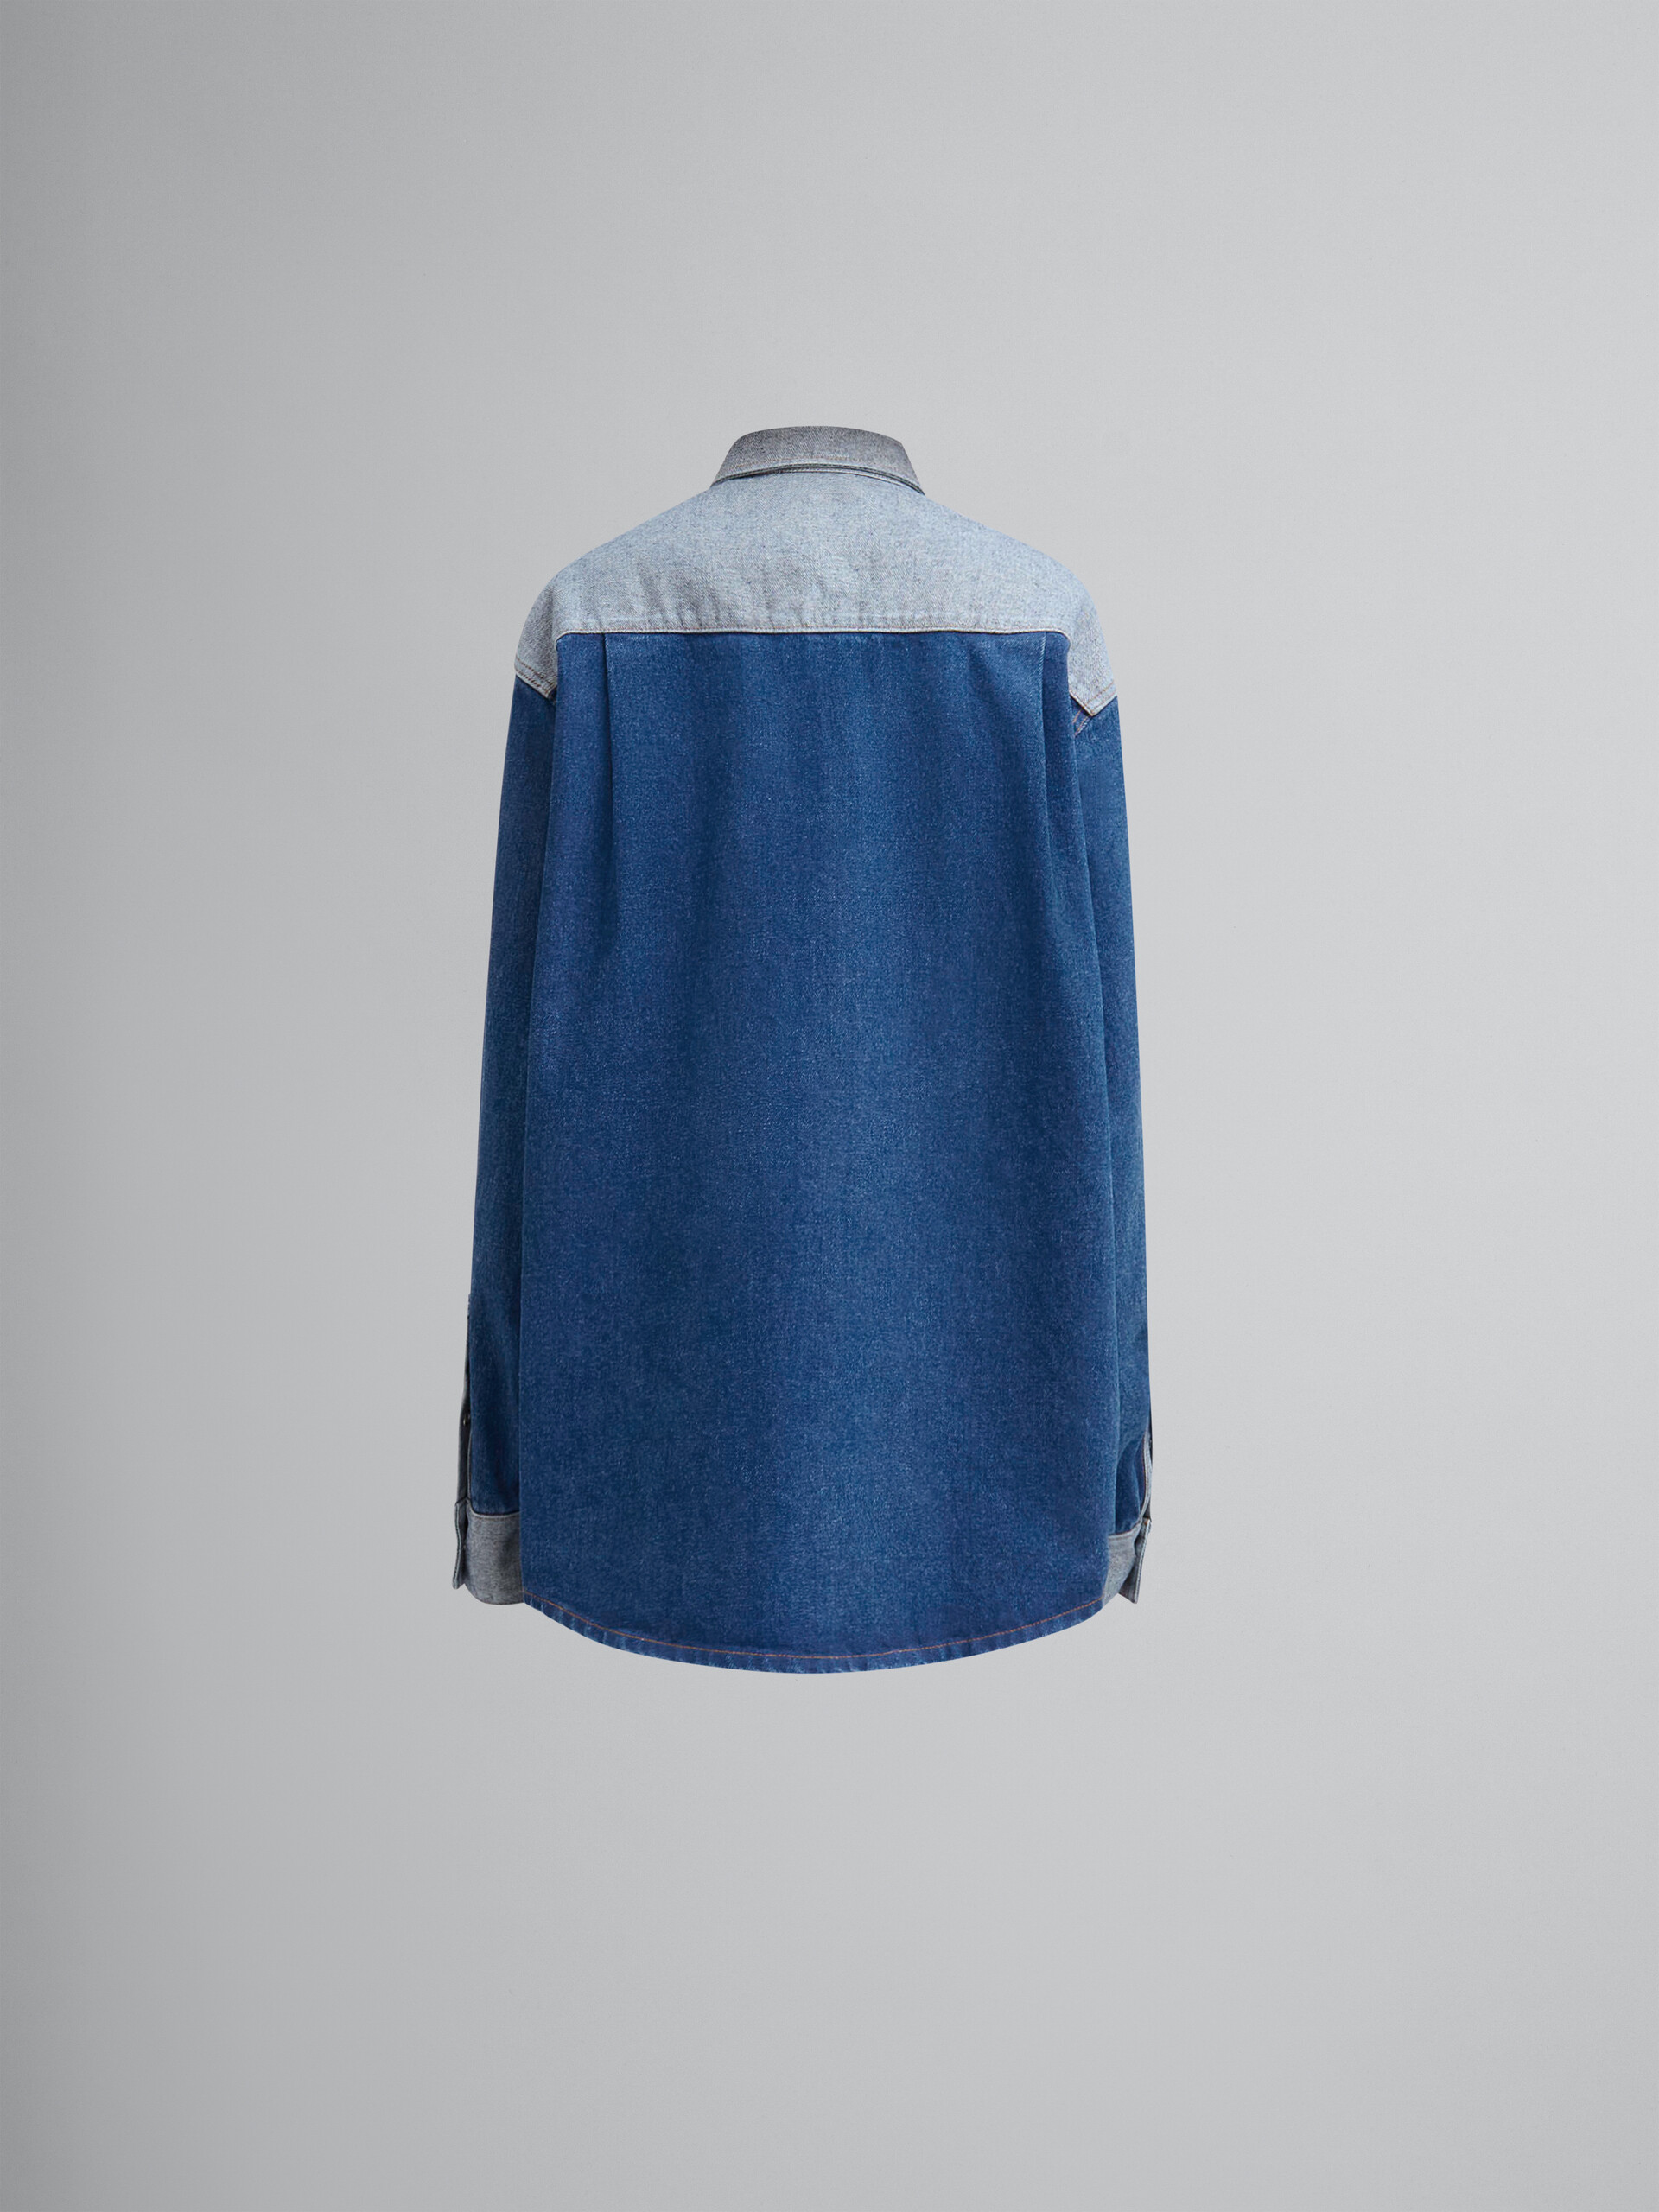 ブルー ツートーンデニム製シャツ、カットオフ仕上げのすそ - シャツ - Image 2